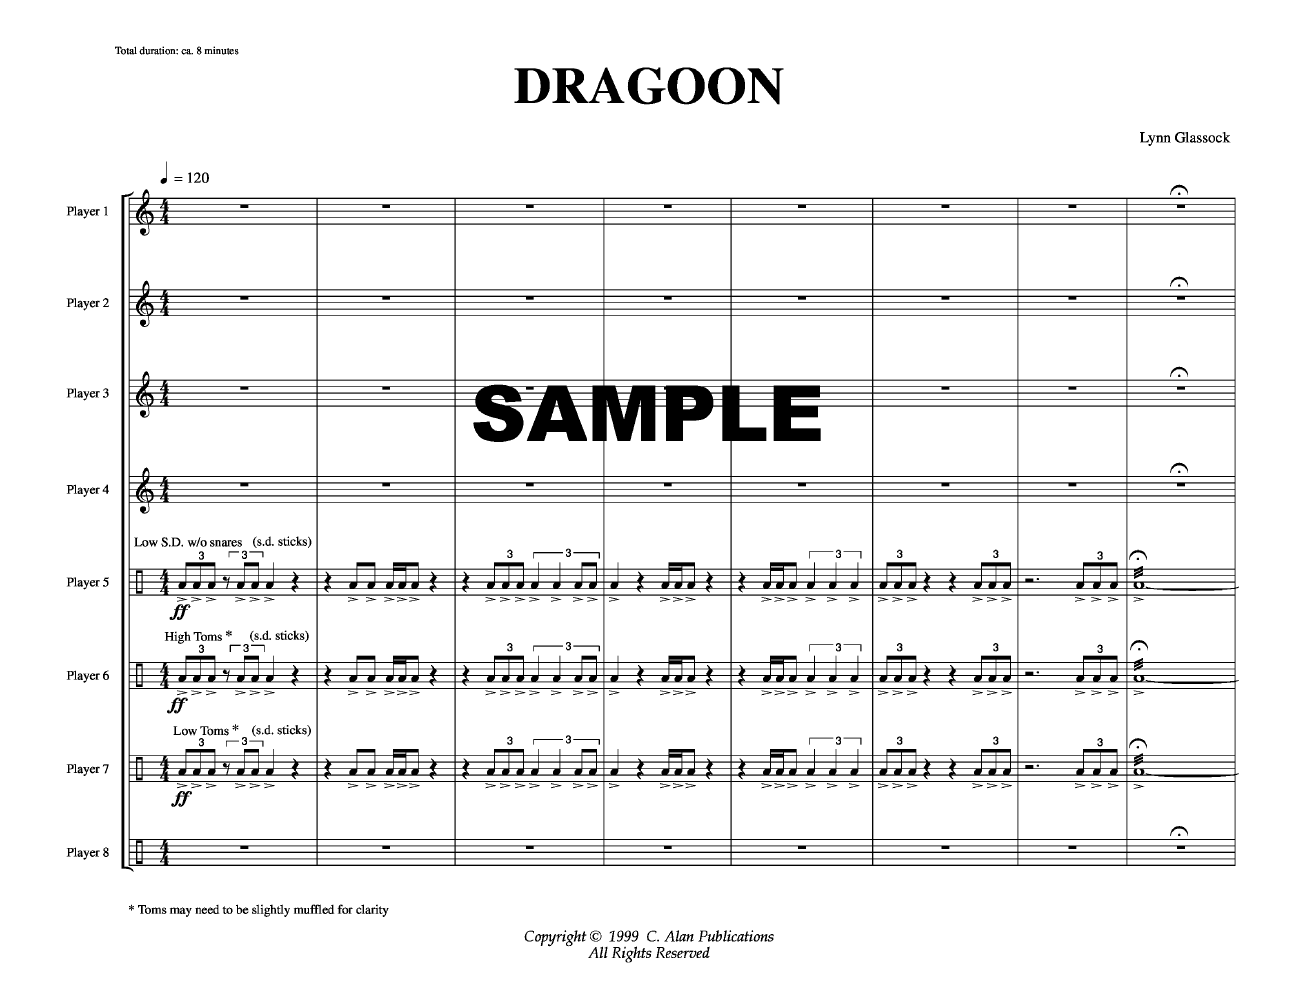 DRAGOON PERCUSSION ENSEMBLE-8 PLAYR